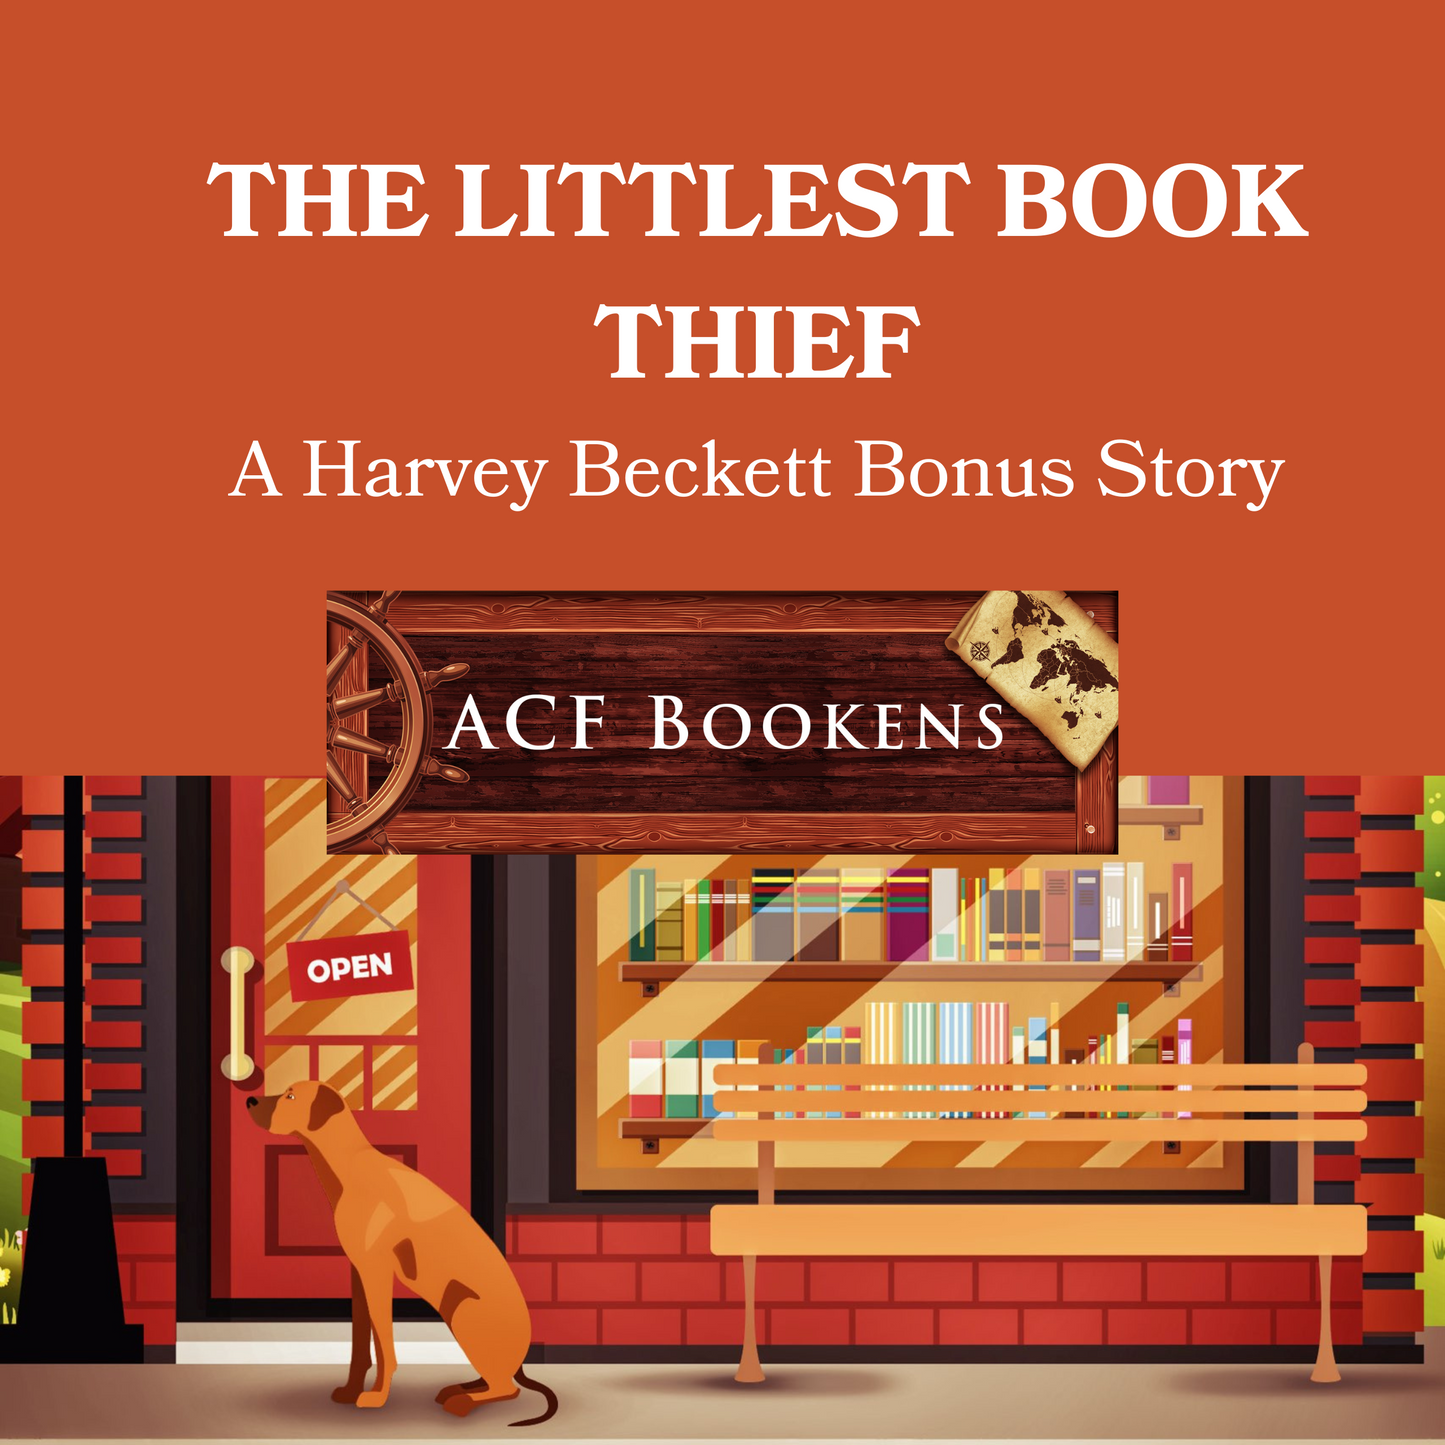 The Littlest Book Thief—A Harvey Beckett Bonus Story